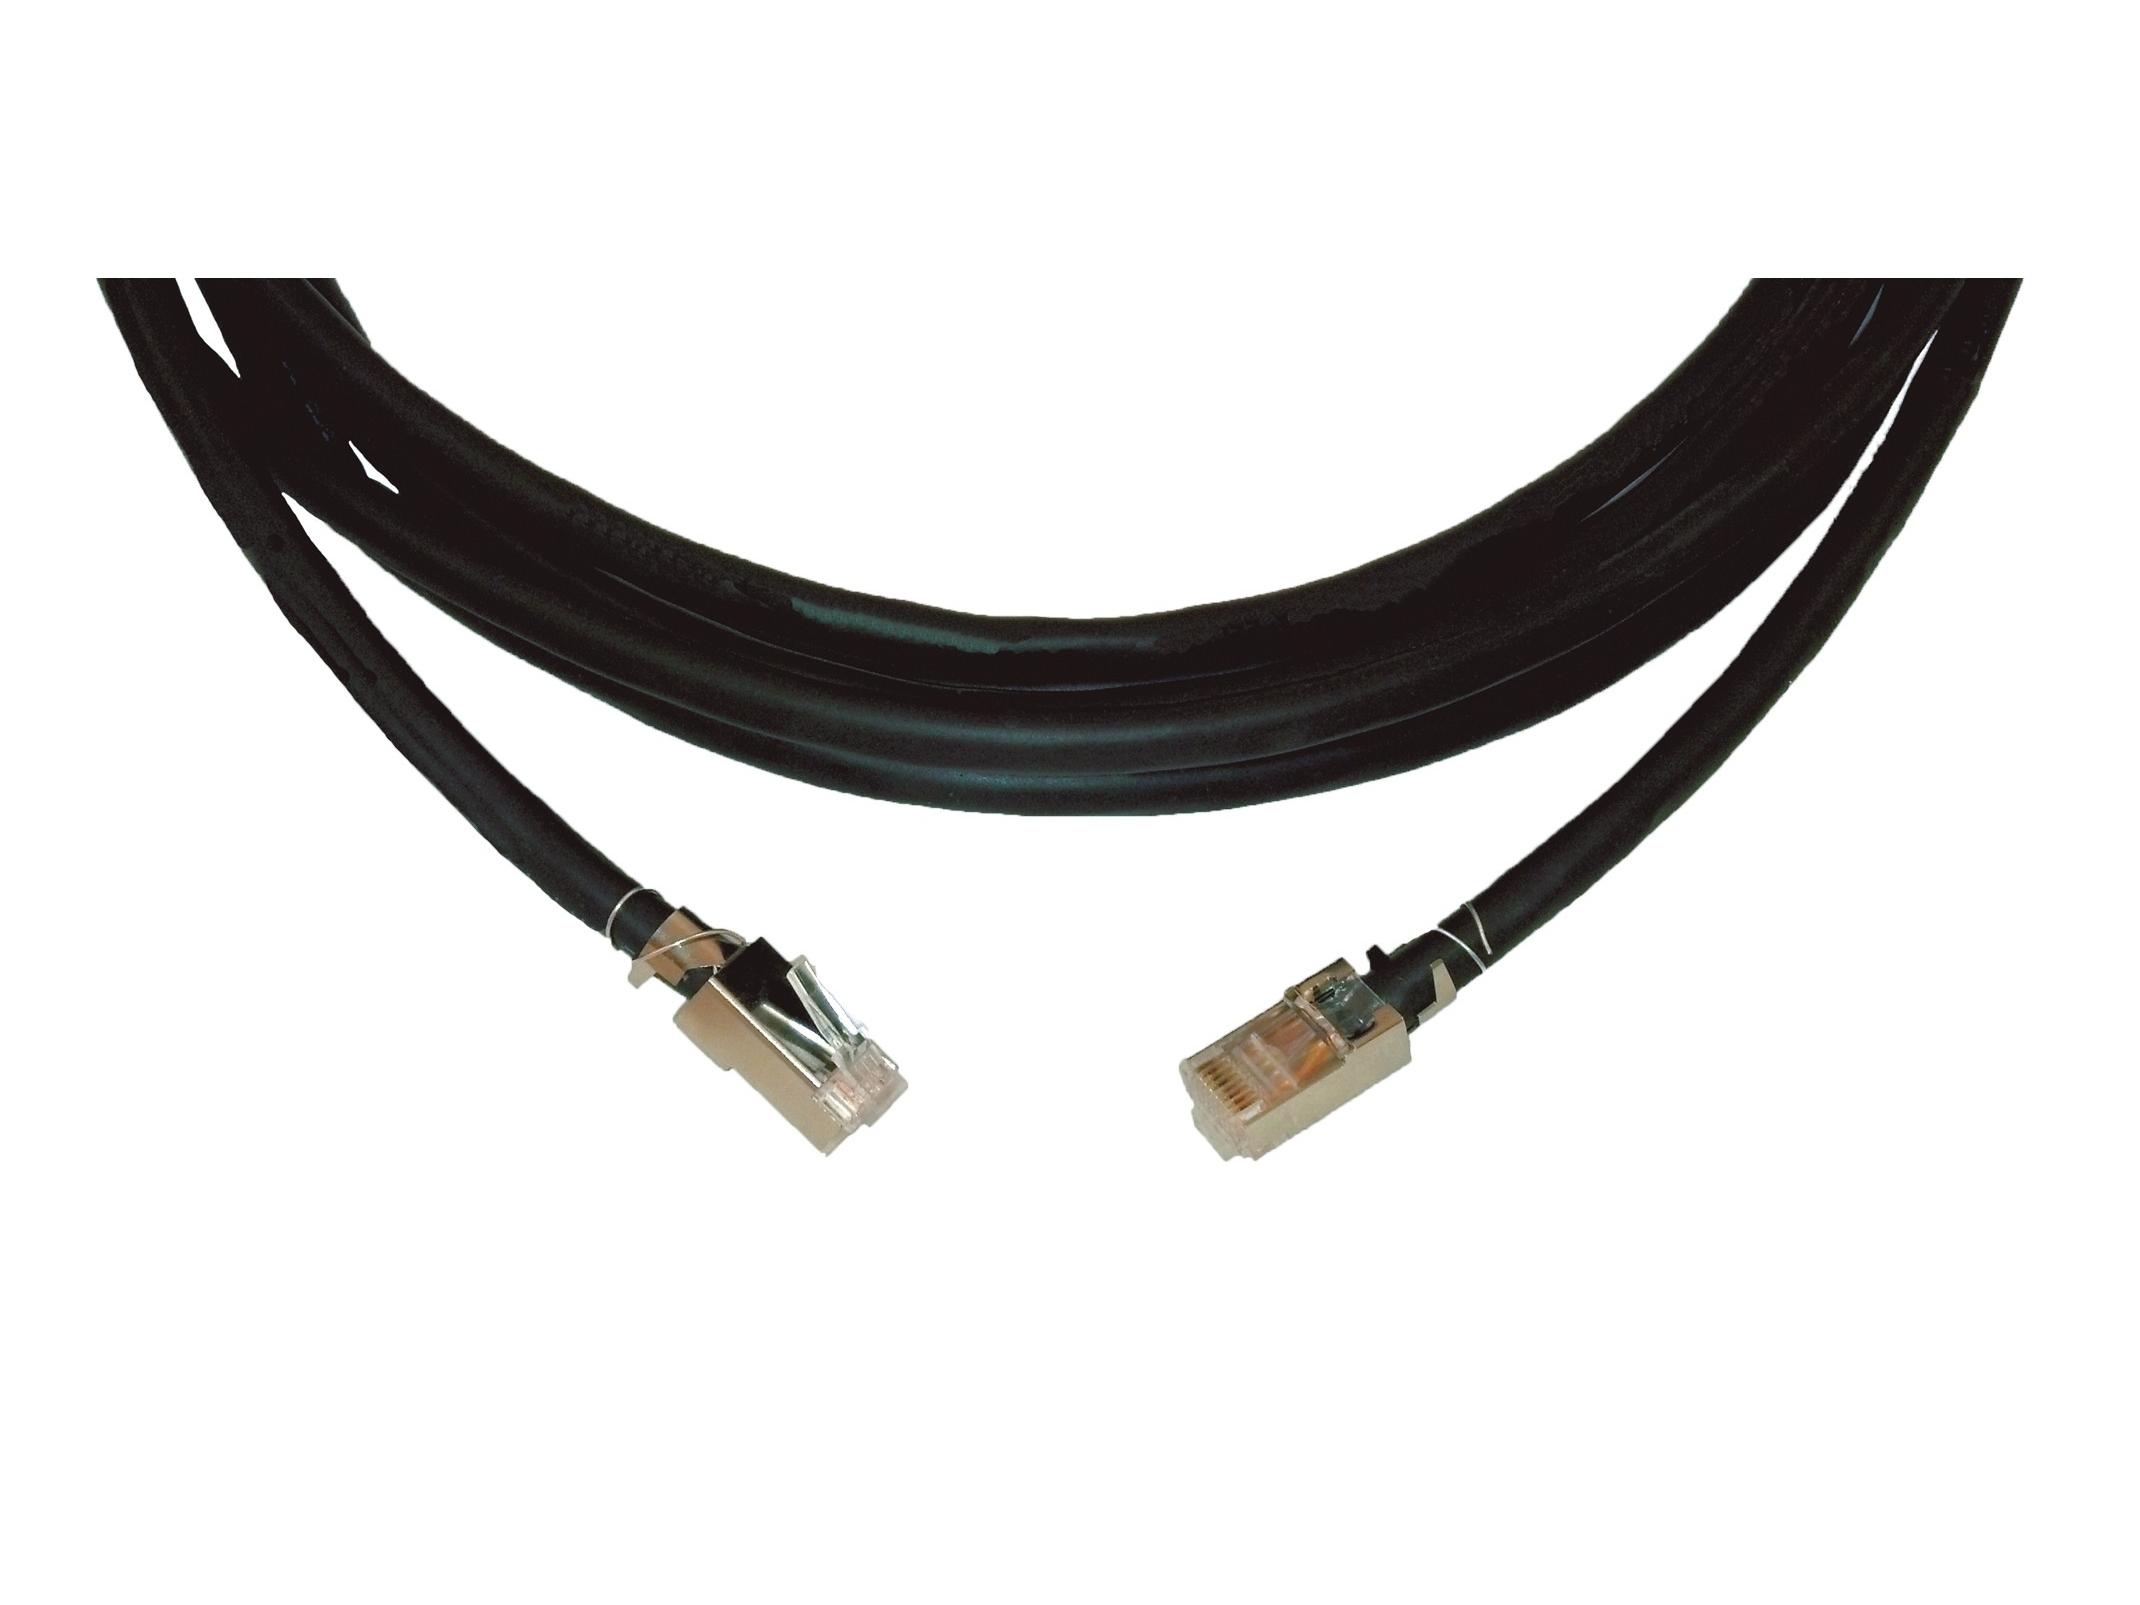 CP-DGK6/DGK6-50 Four-Pair STP Data (Shielded) Plenum Cable (23AWG) 50ft by Kramer